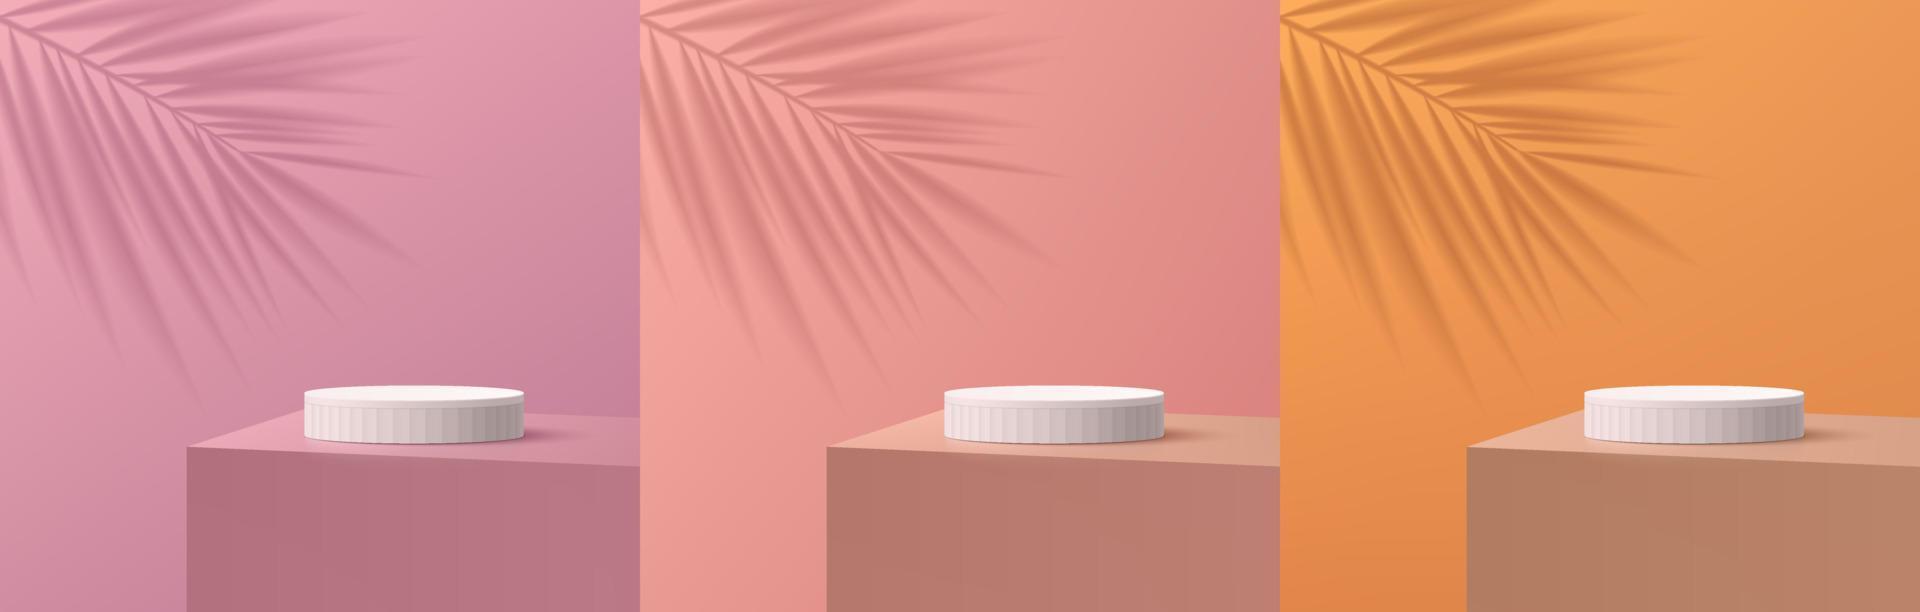 conjunto de pódio de suporte de cilindro branco 3d realista na mesa de trabalho com fundo rosa, roxo, laranja e sombra de folha de palmeira. forma geométrica abstrata de vetor. exibição de produtos de cena mínima. vitrine de palco. vetor